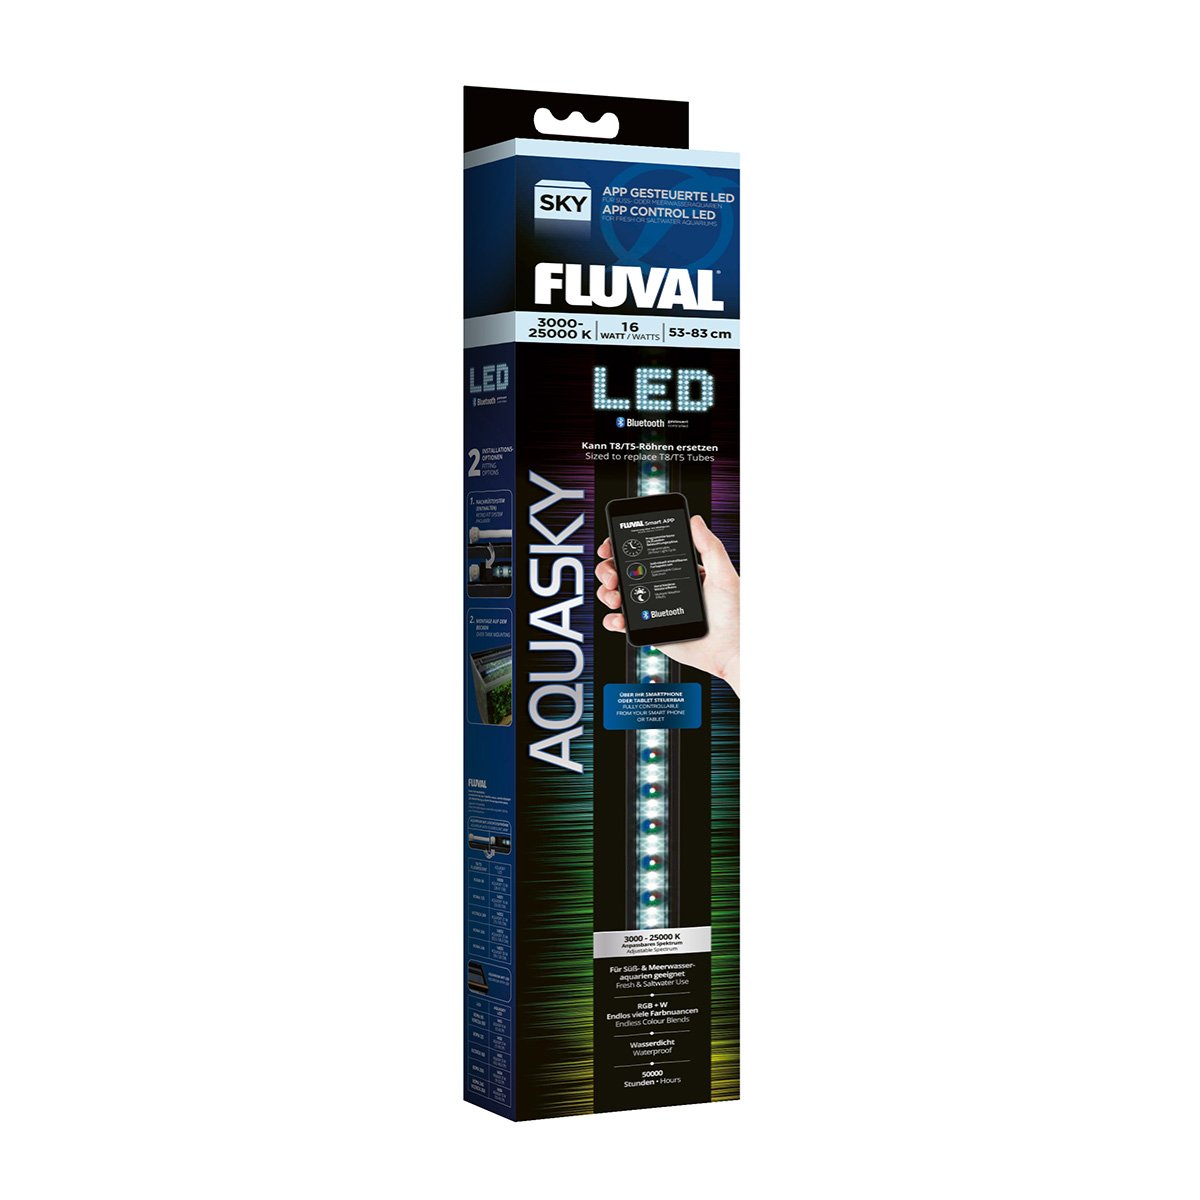 Fluval AquaSky LED 2.0 16W, 53-83cm von Fluval